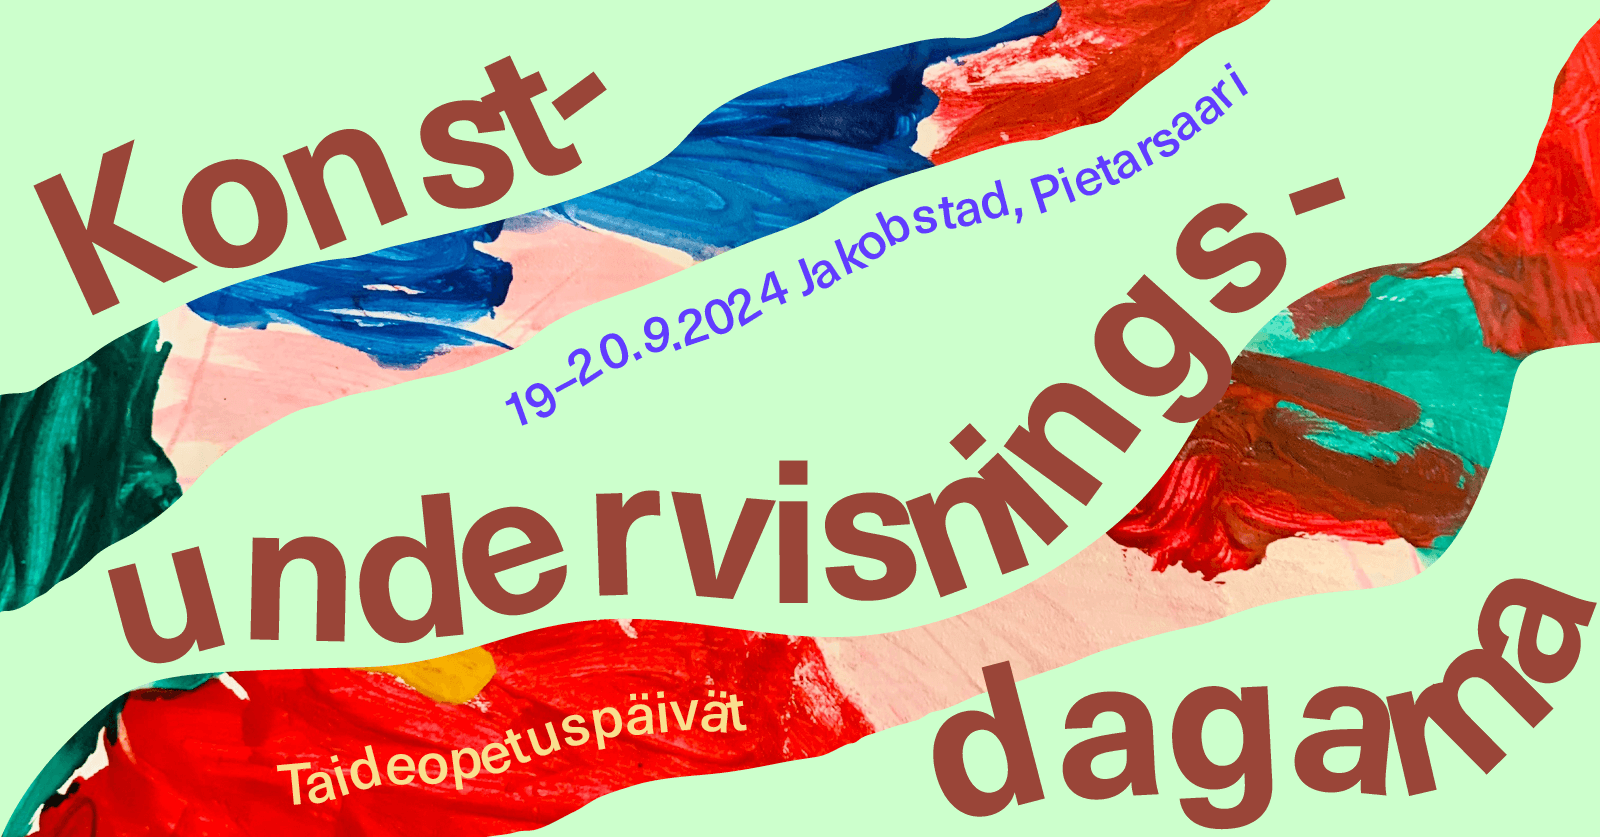 Taideopetuspäivien 19.-20.9.2+24 ruotsinkielinen mainoskuva.